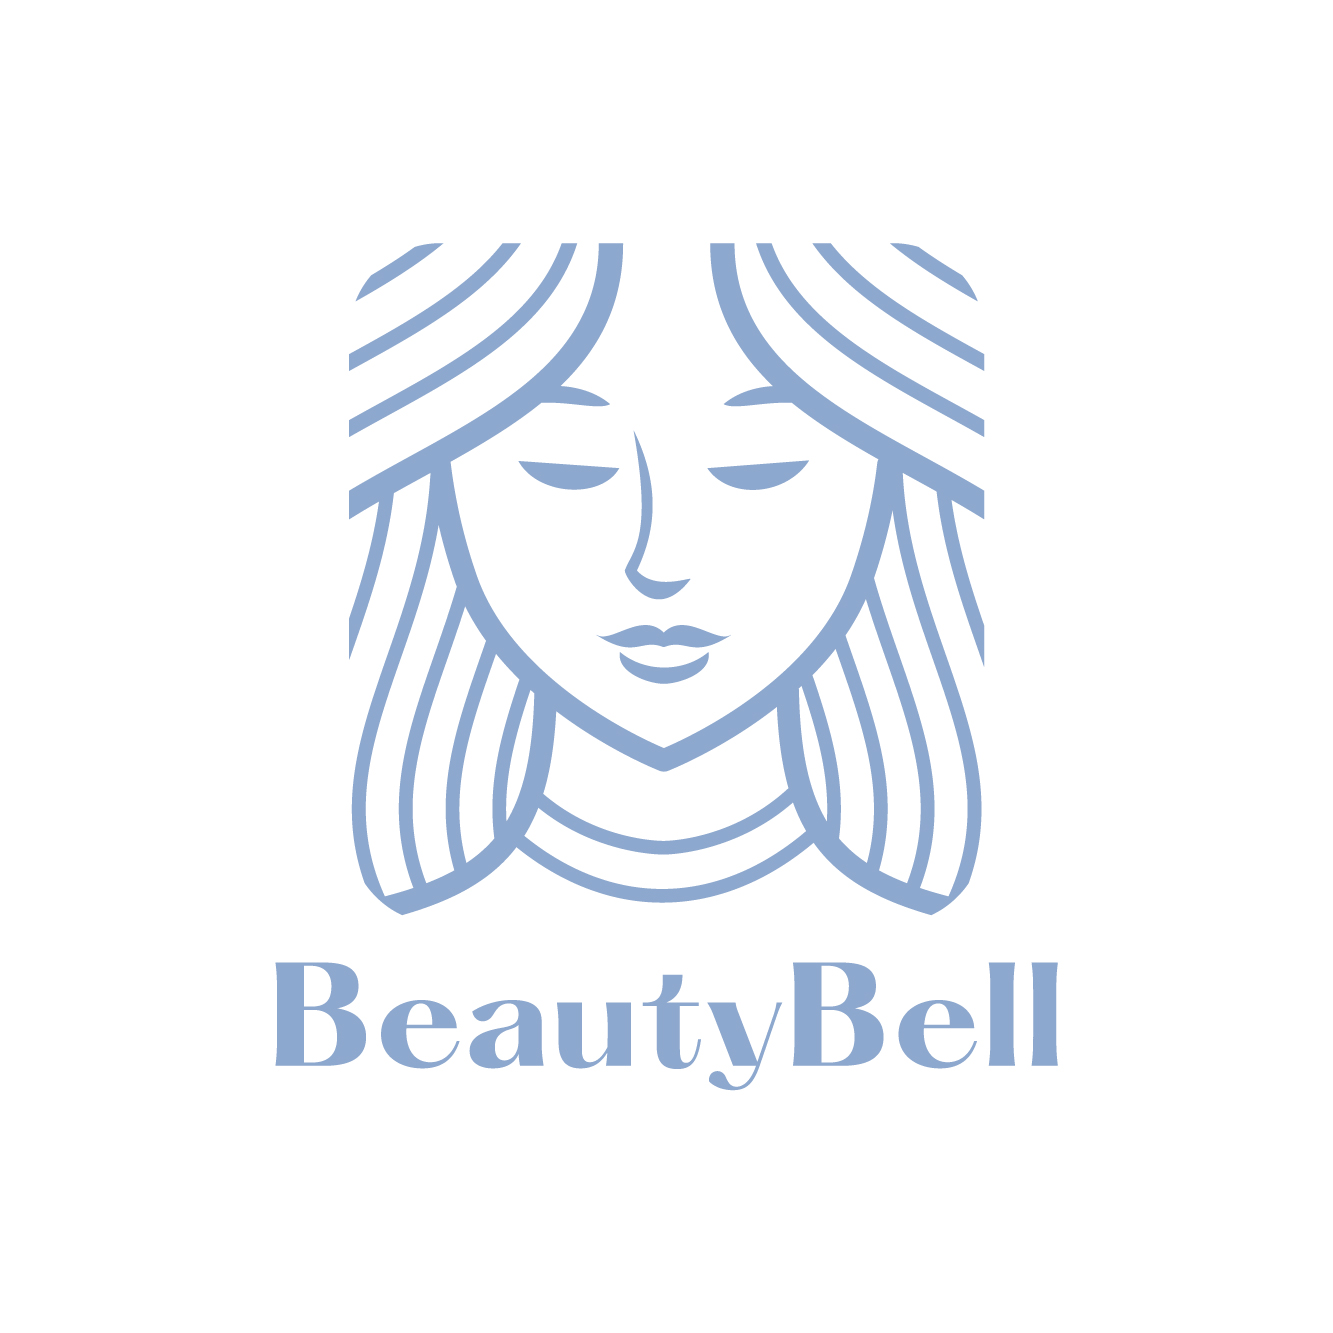 Beautybell